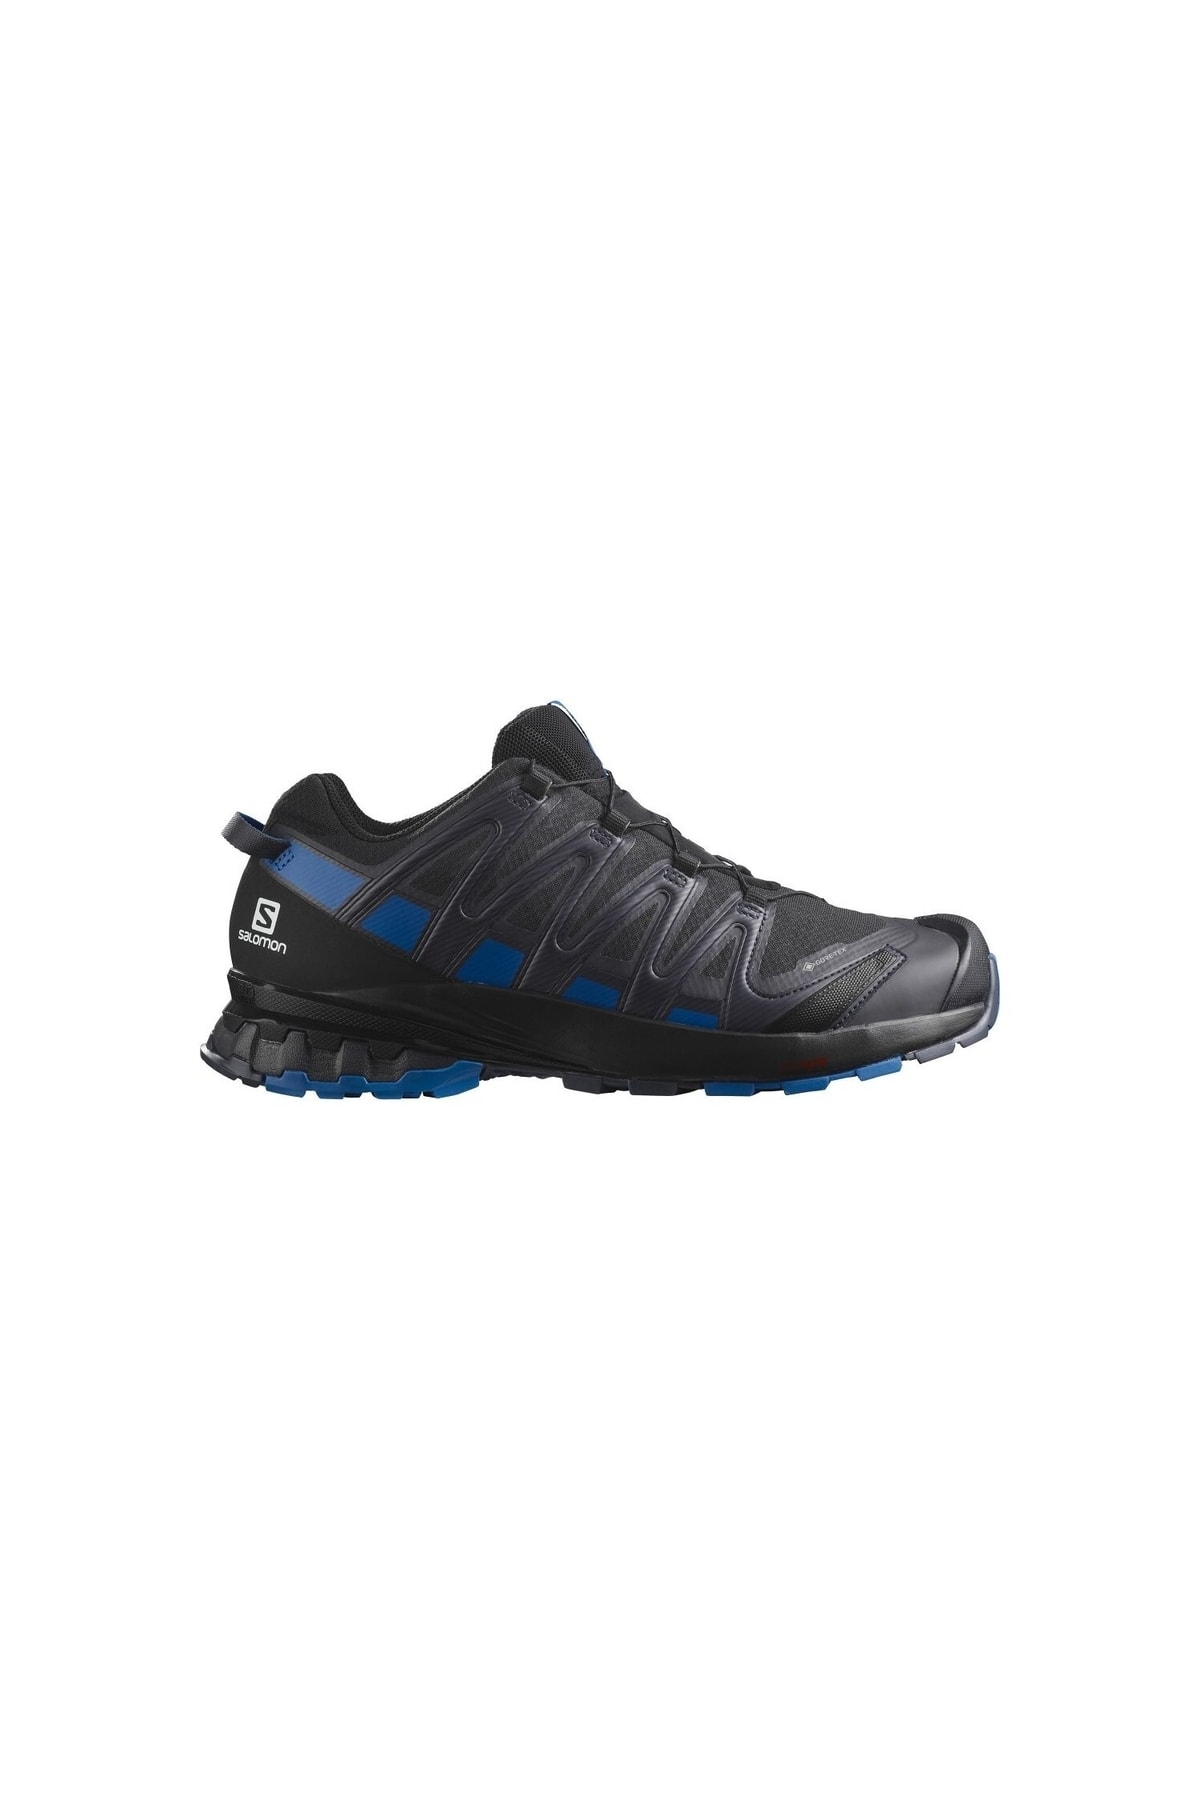 Salomon Xa Pro Siyah Spor Ayakkabı (L41735300)